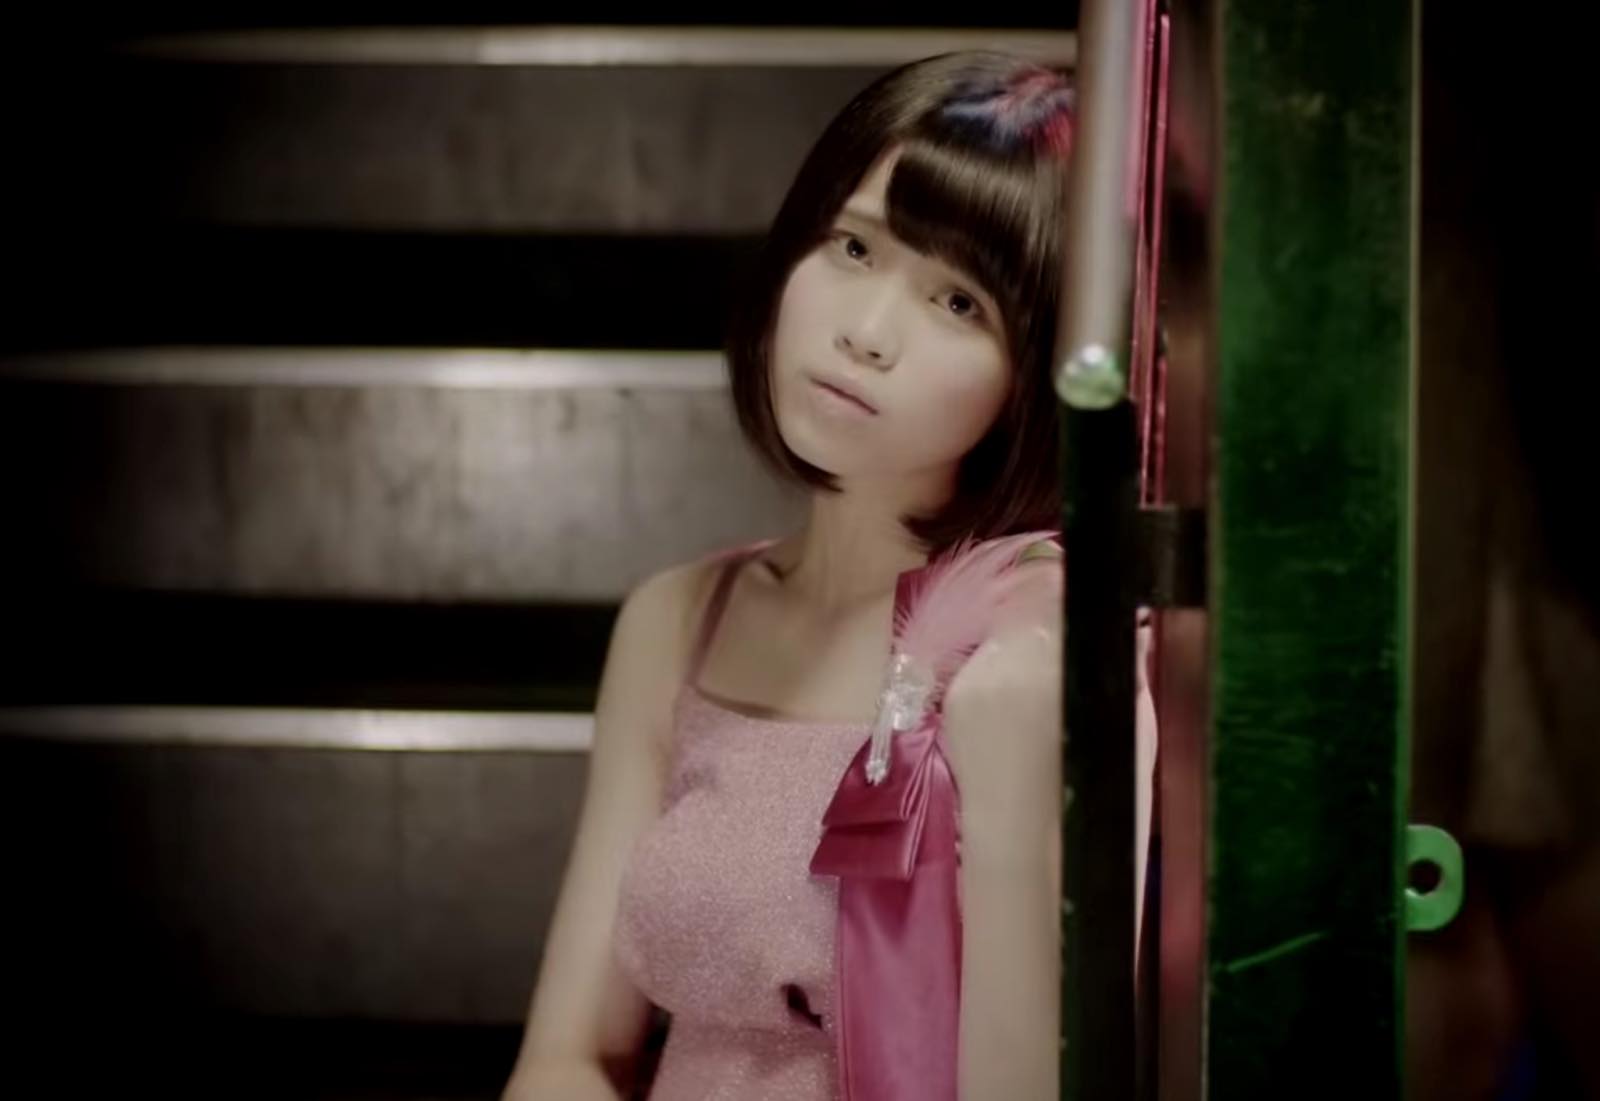 A Dangerously Sweet Temptation? Bakusute Sotokanda Icchome Reveals MV for “Amai Yuuwaku Dangerous”!